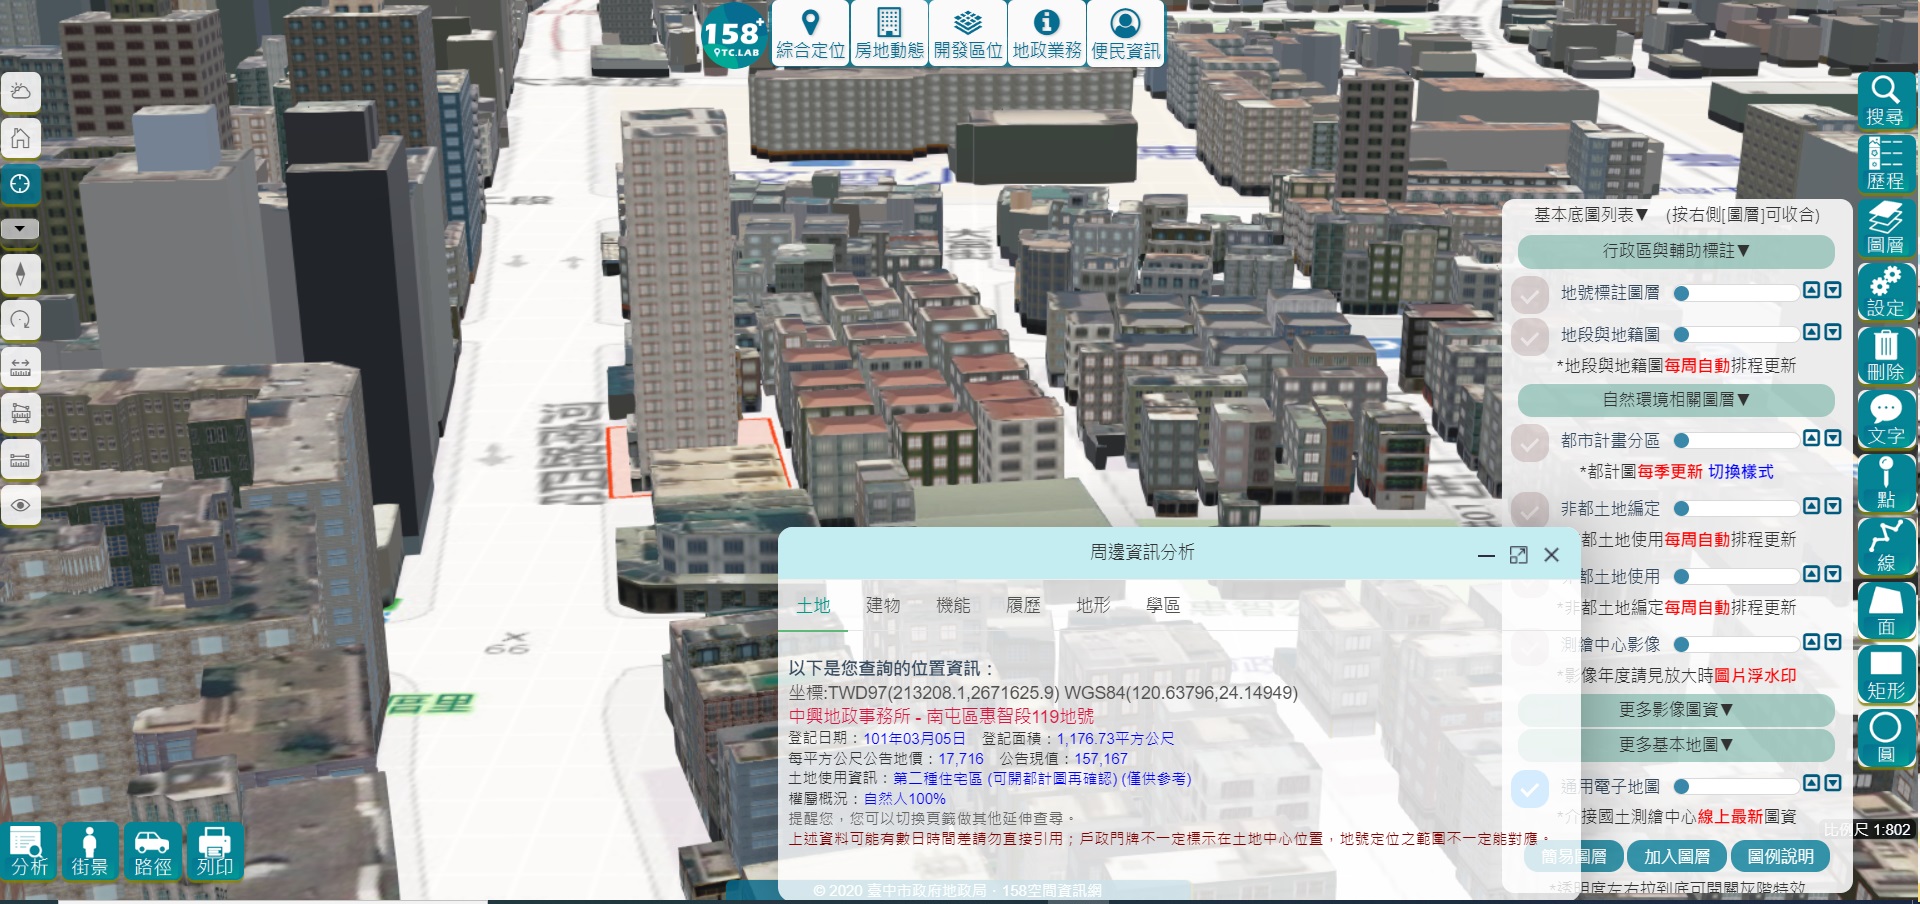 臺中市158空間資訊網系統畫面